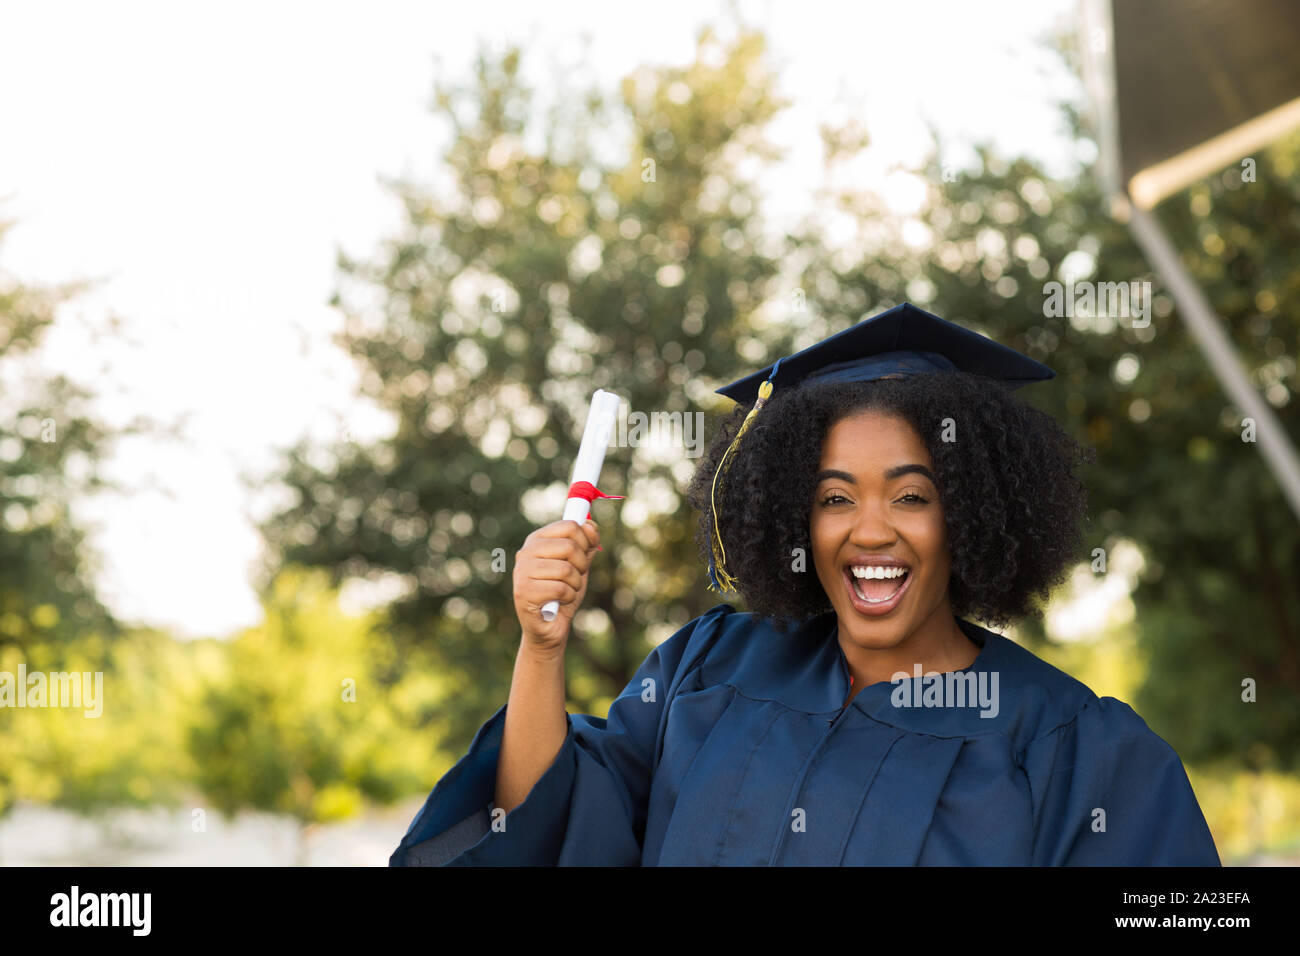 Seguro afroamericana en su graduación. Foto de stock